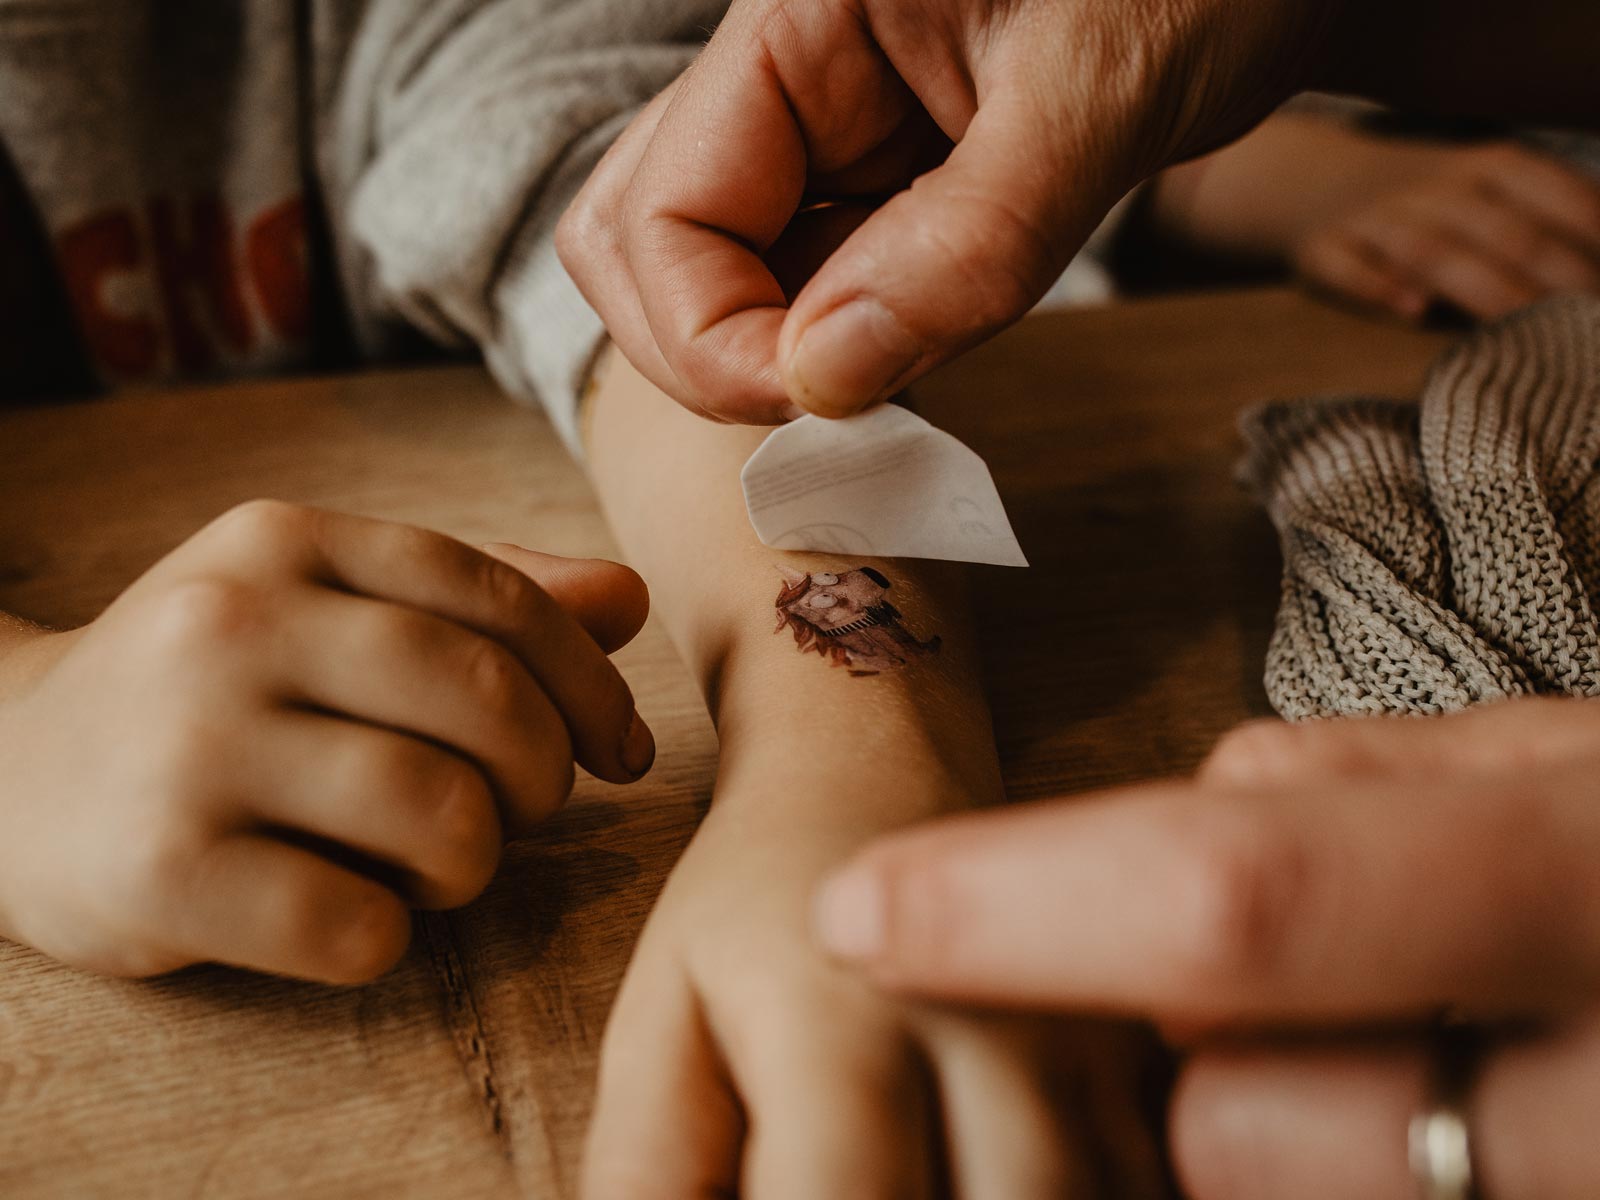 Einhorn-Tattoo von Halfbrid wird auf einem Kinderarm geklebt